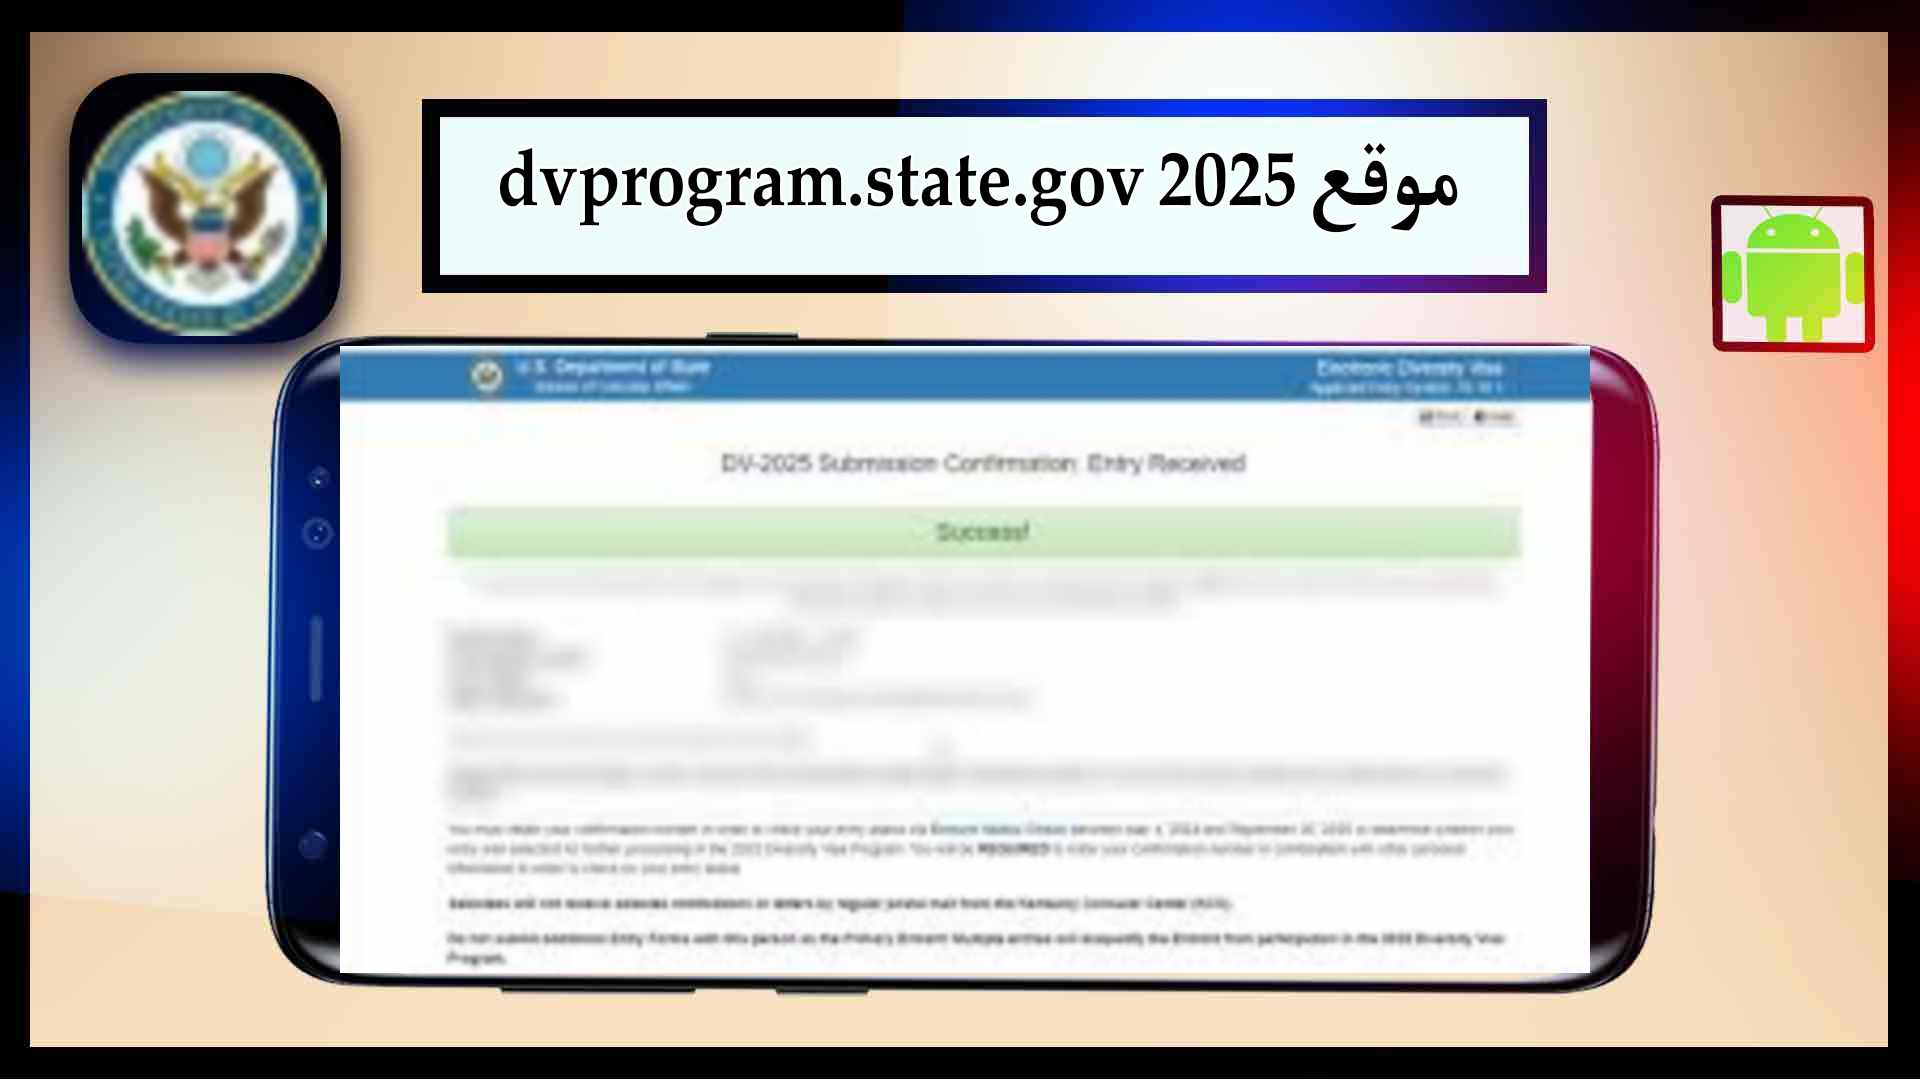 موقع اللوتري الأمريكي 2025 dvprogram.state.gov نتائج قرعة أمريكا